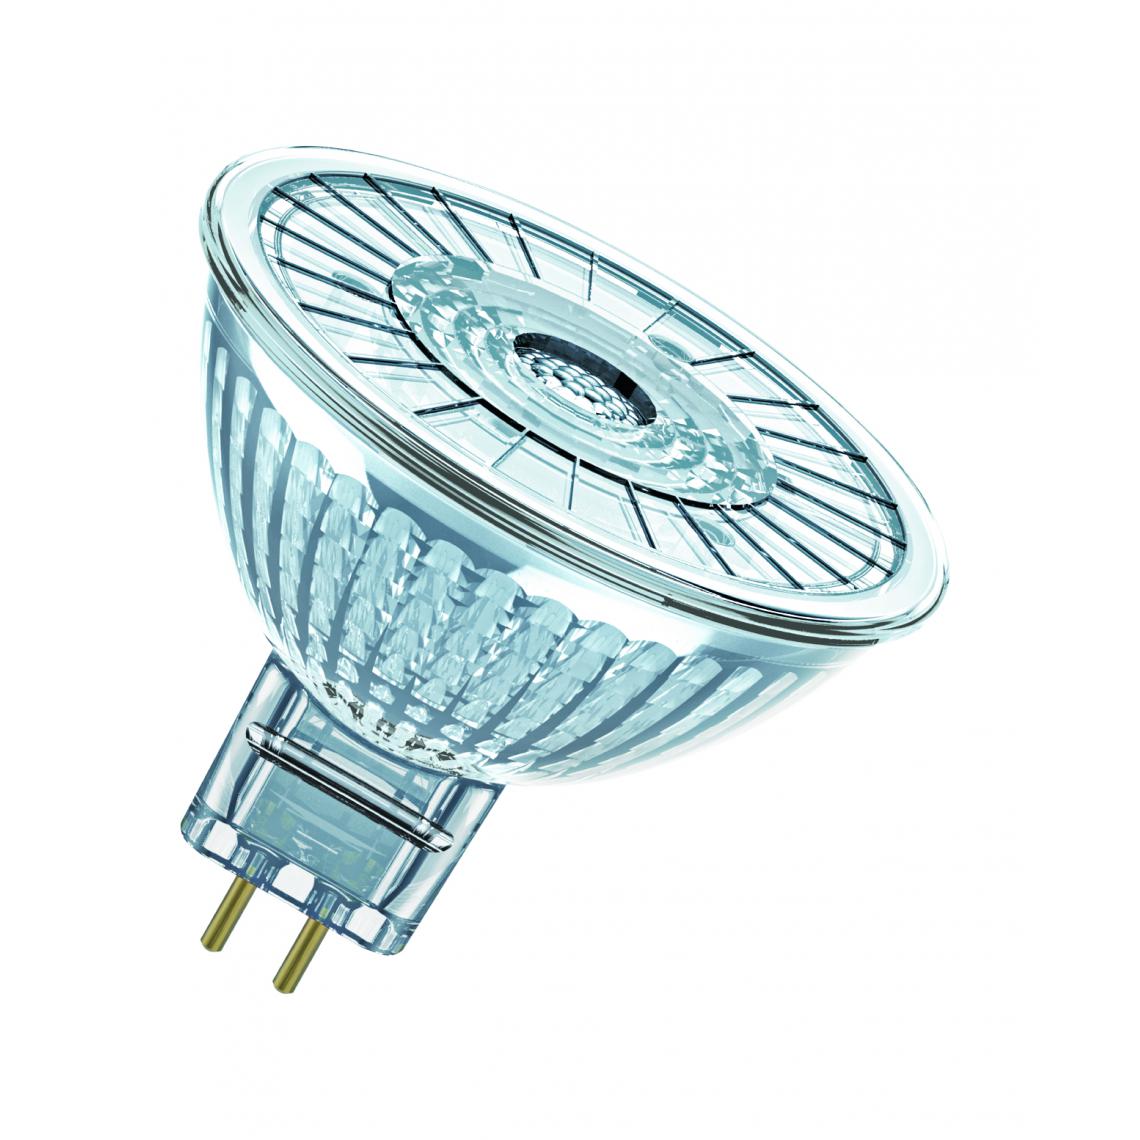 Osram - ampoule à led - osram parathom - gu5.3 - 8w - 4000k - 561 lm - mr16 - dimmable - osram 449428 - Ampoules LED